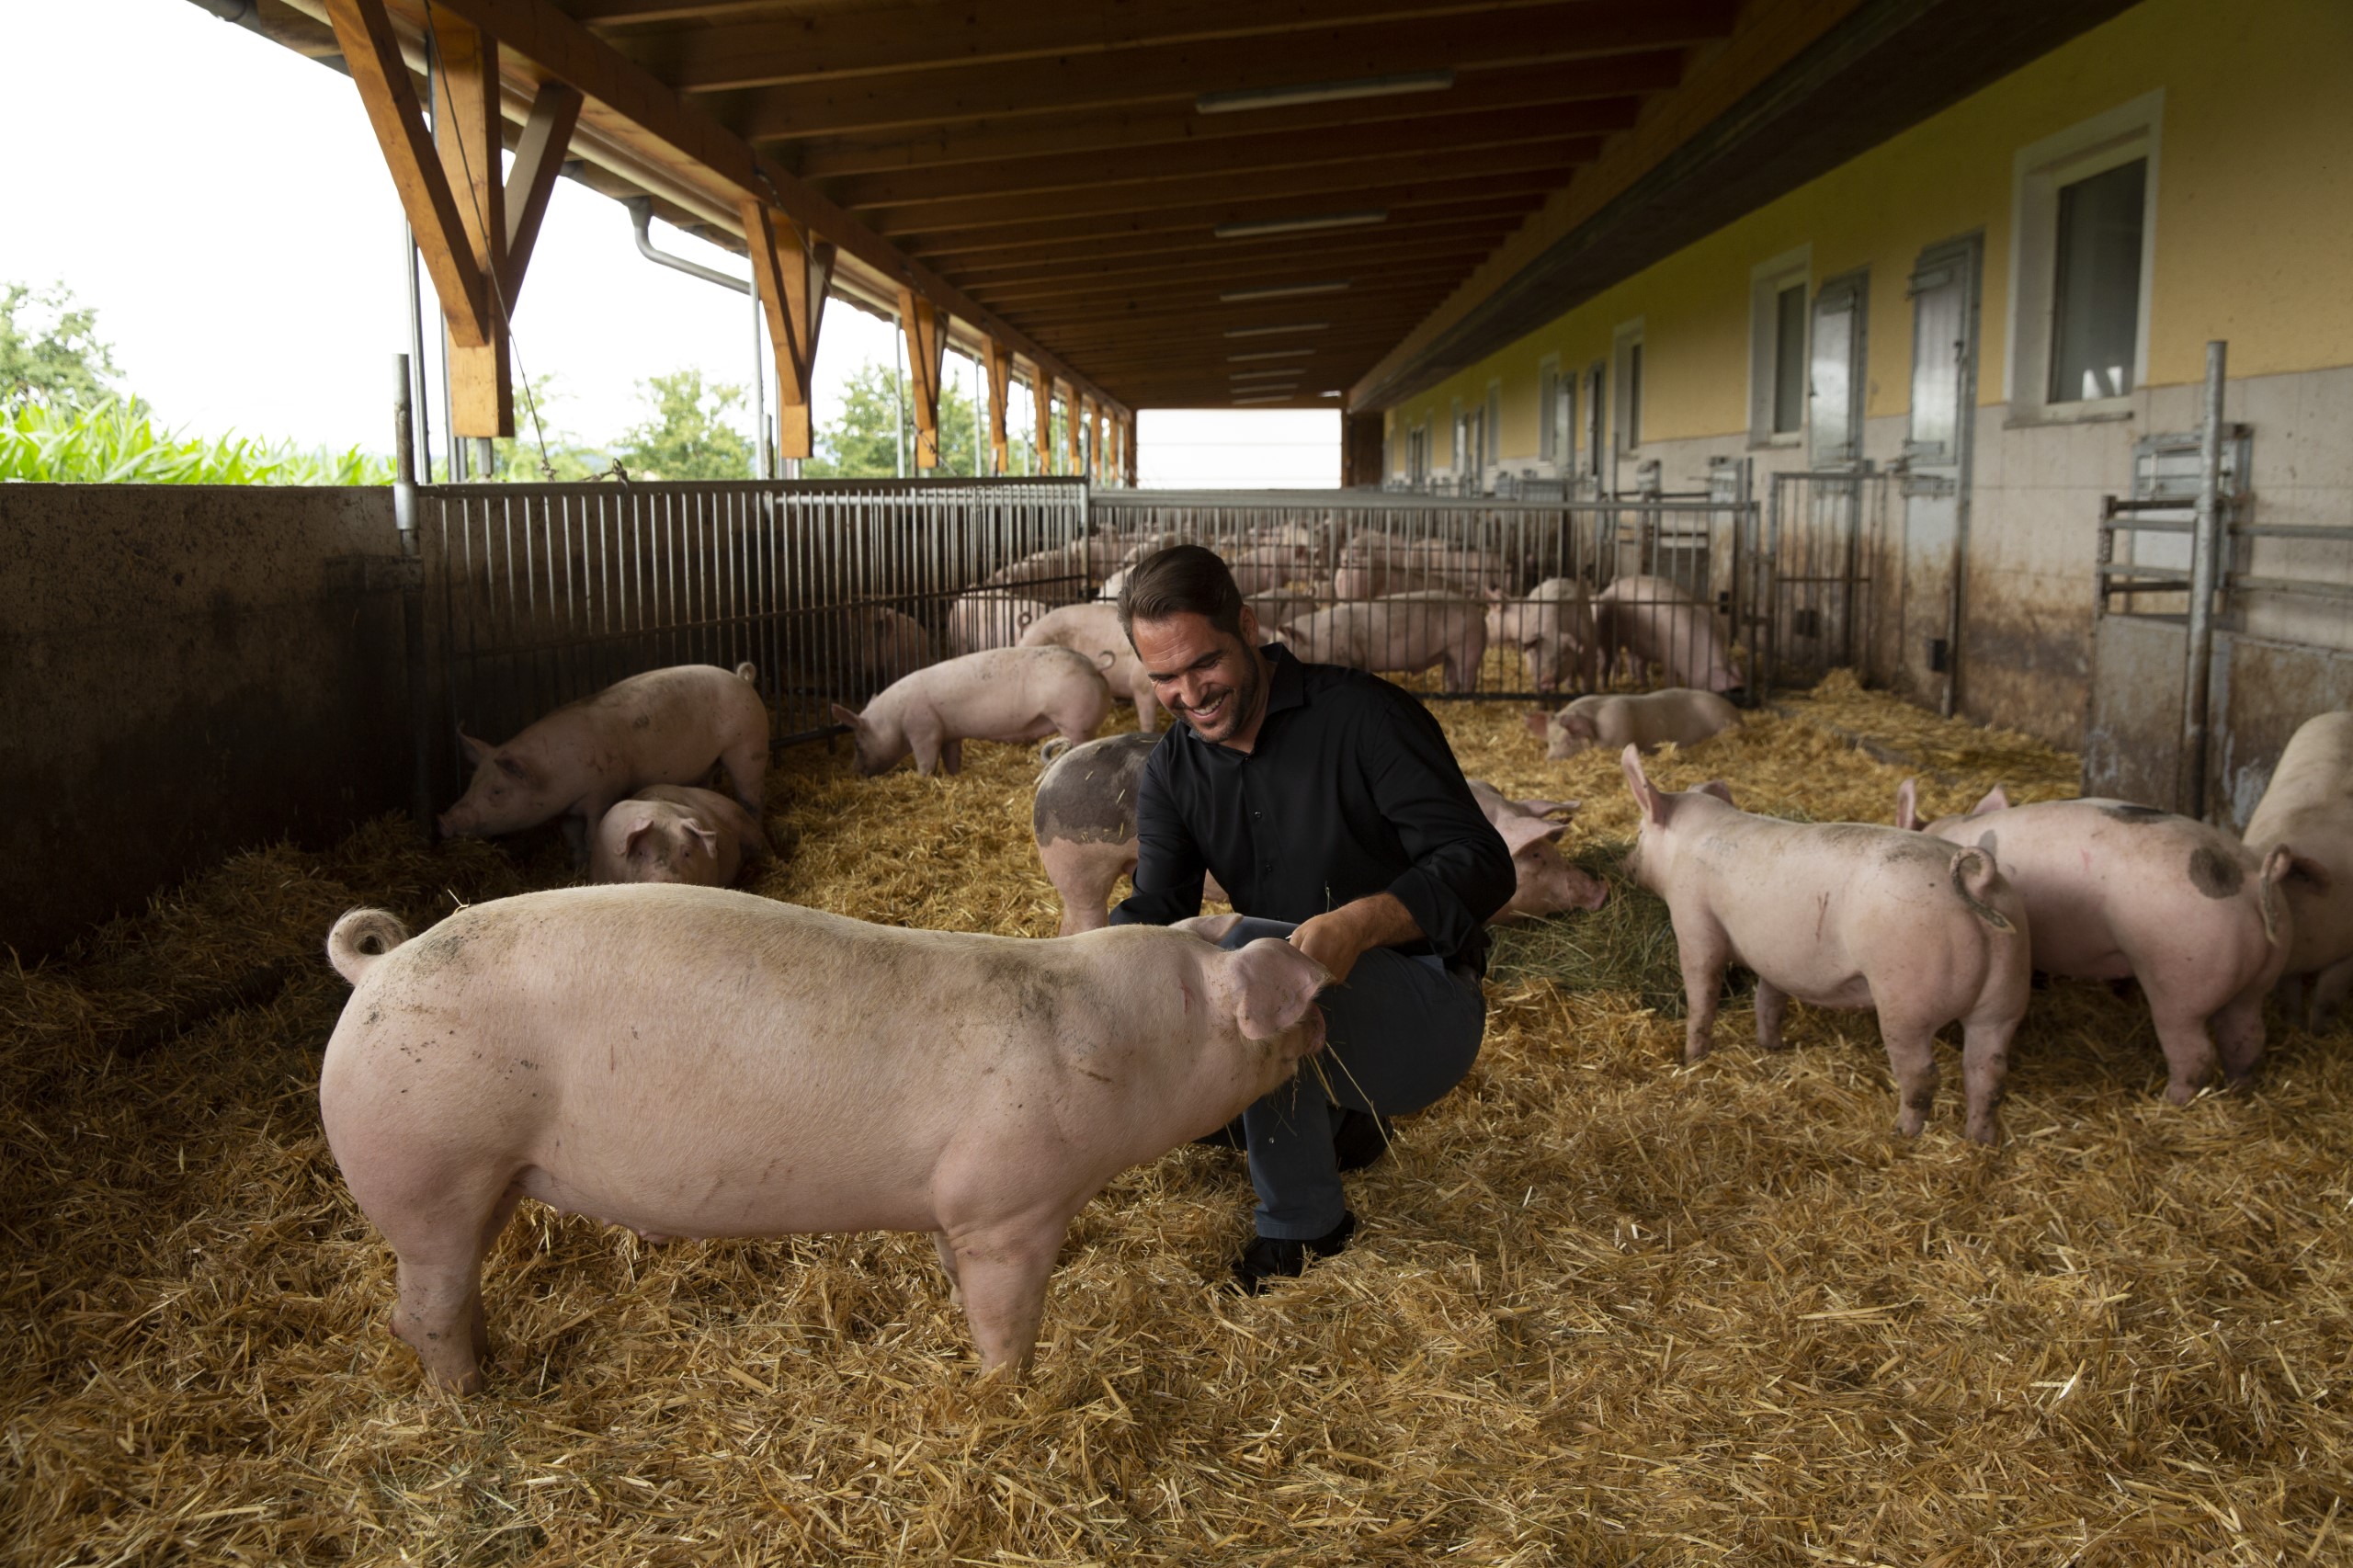 Bauernhof, Schweinestall, Mann füttert ein Schwein mit Heu